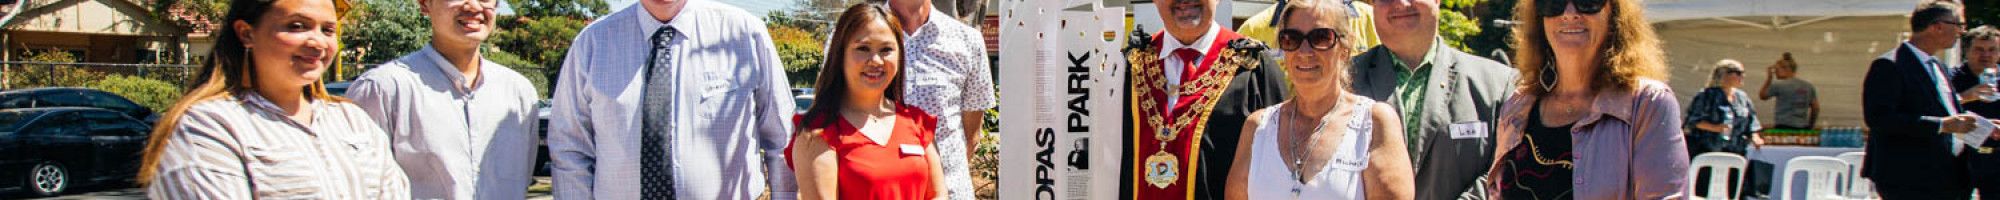 Copas Park New Interpretive Sign Unveiled